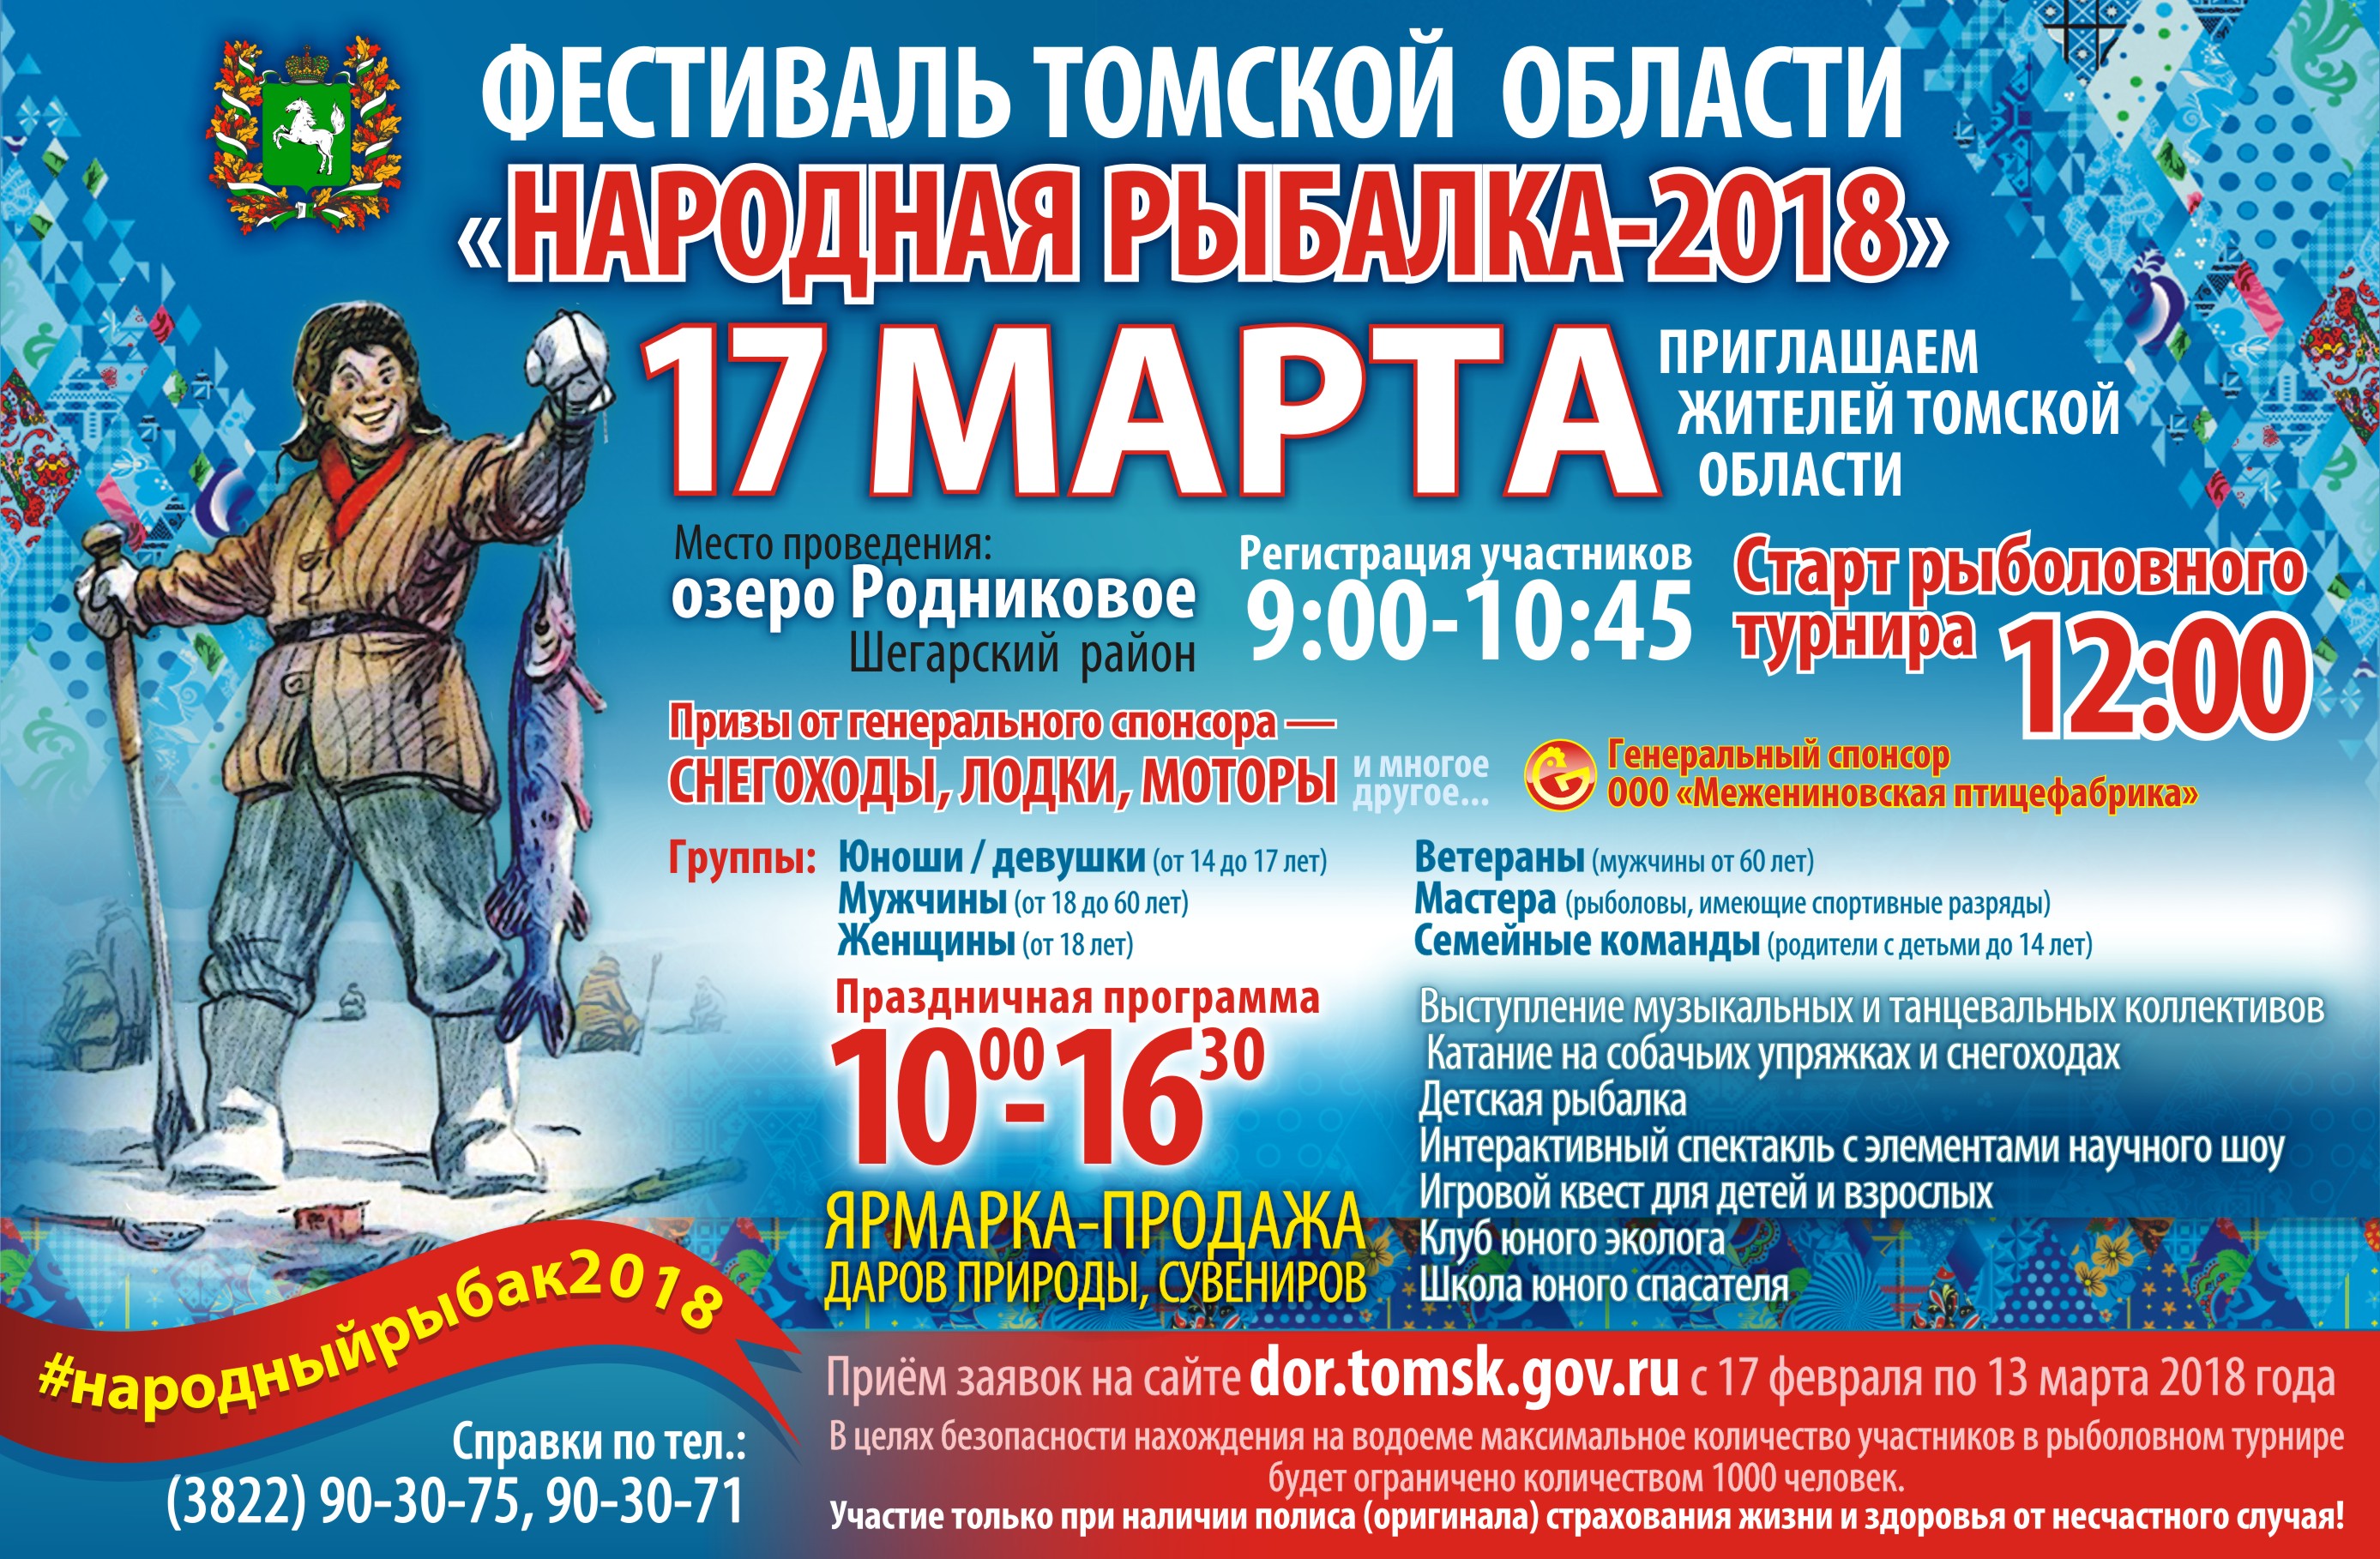 Фестиваль Томской области «Народная рыбалка - 2018»